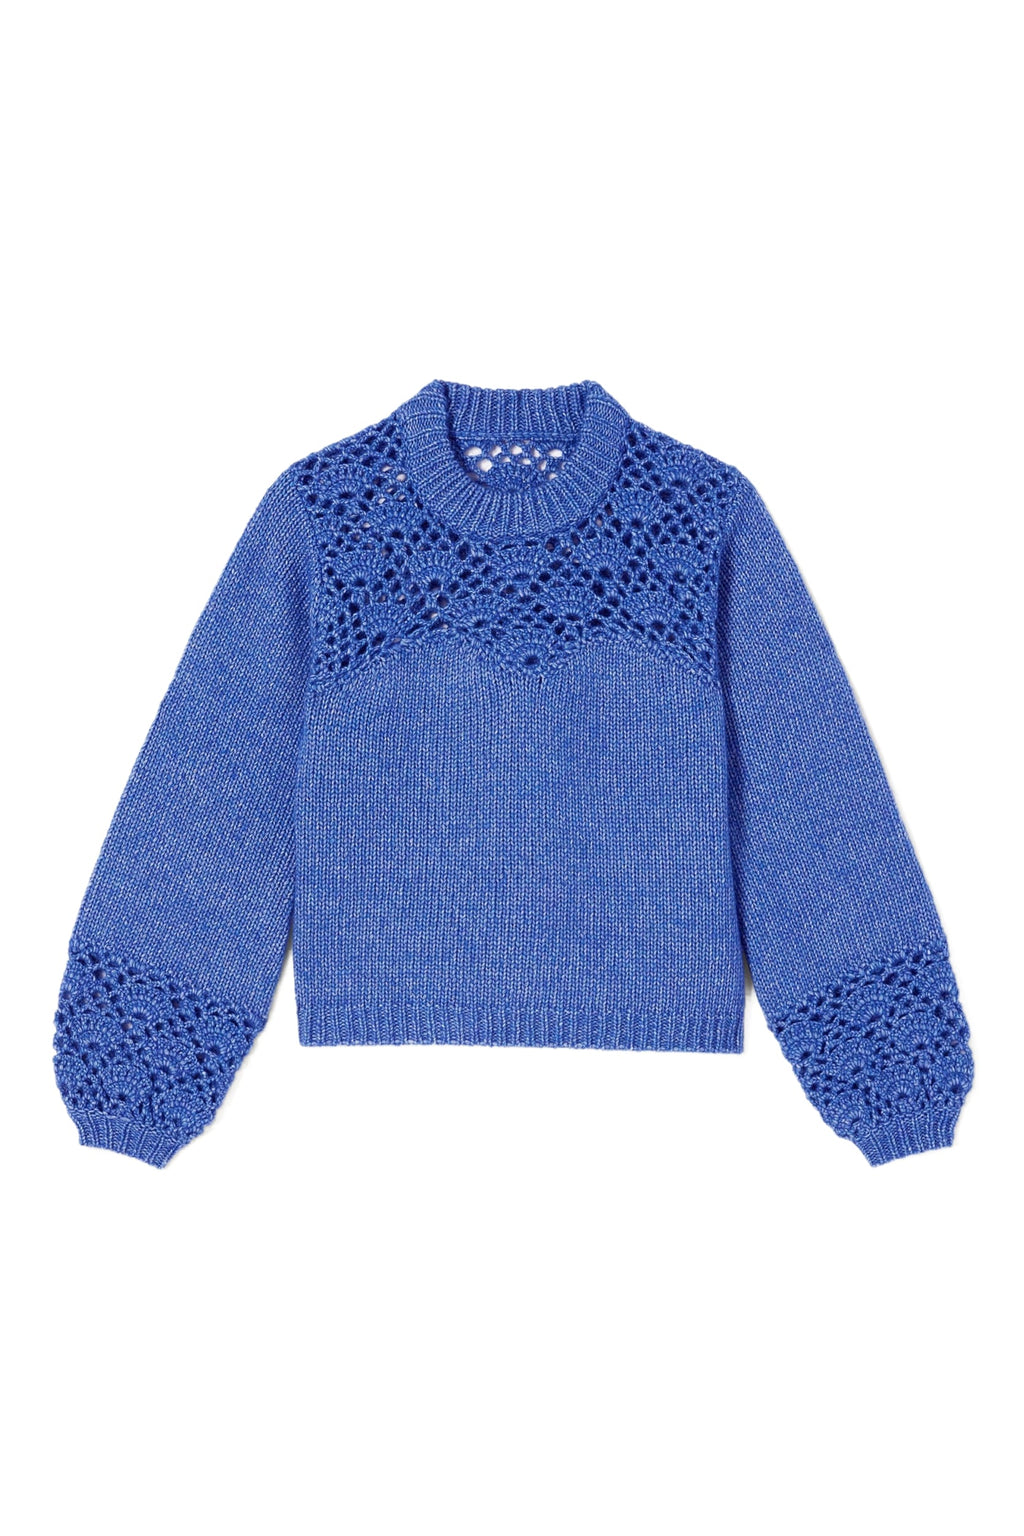 Merlette Alix Sweater in Byzantine – Dora Maar